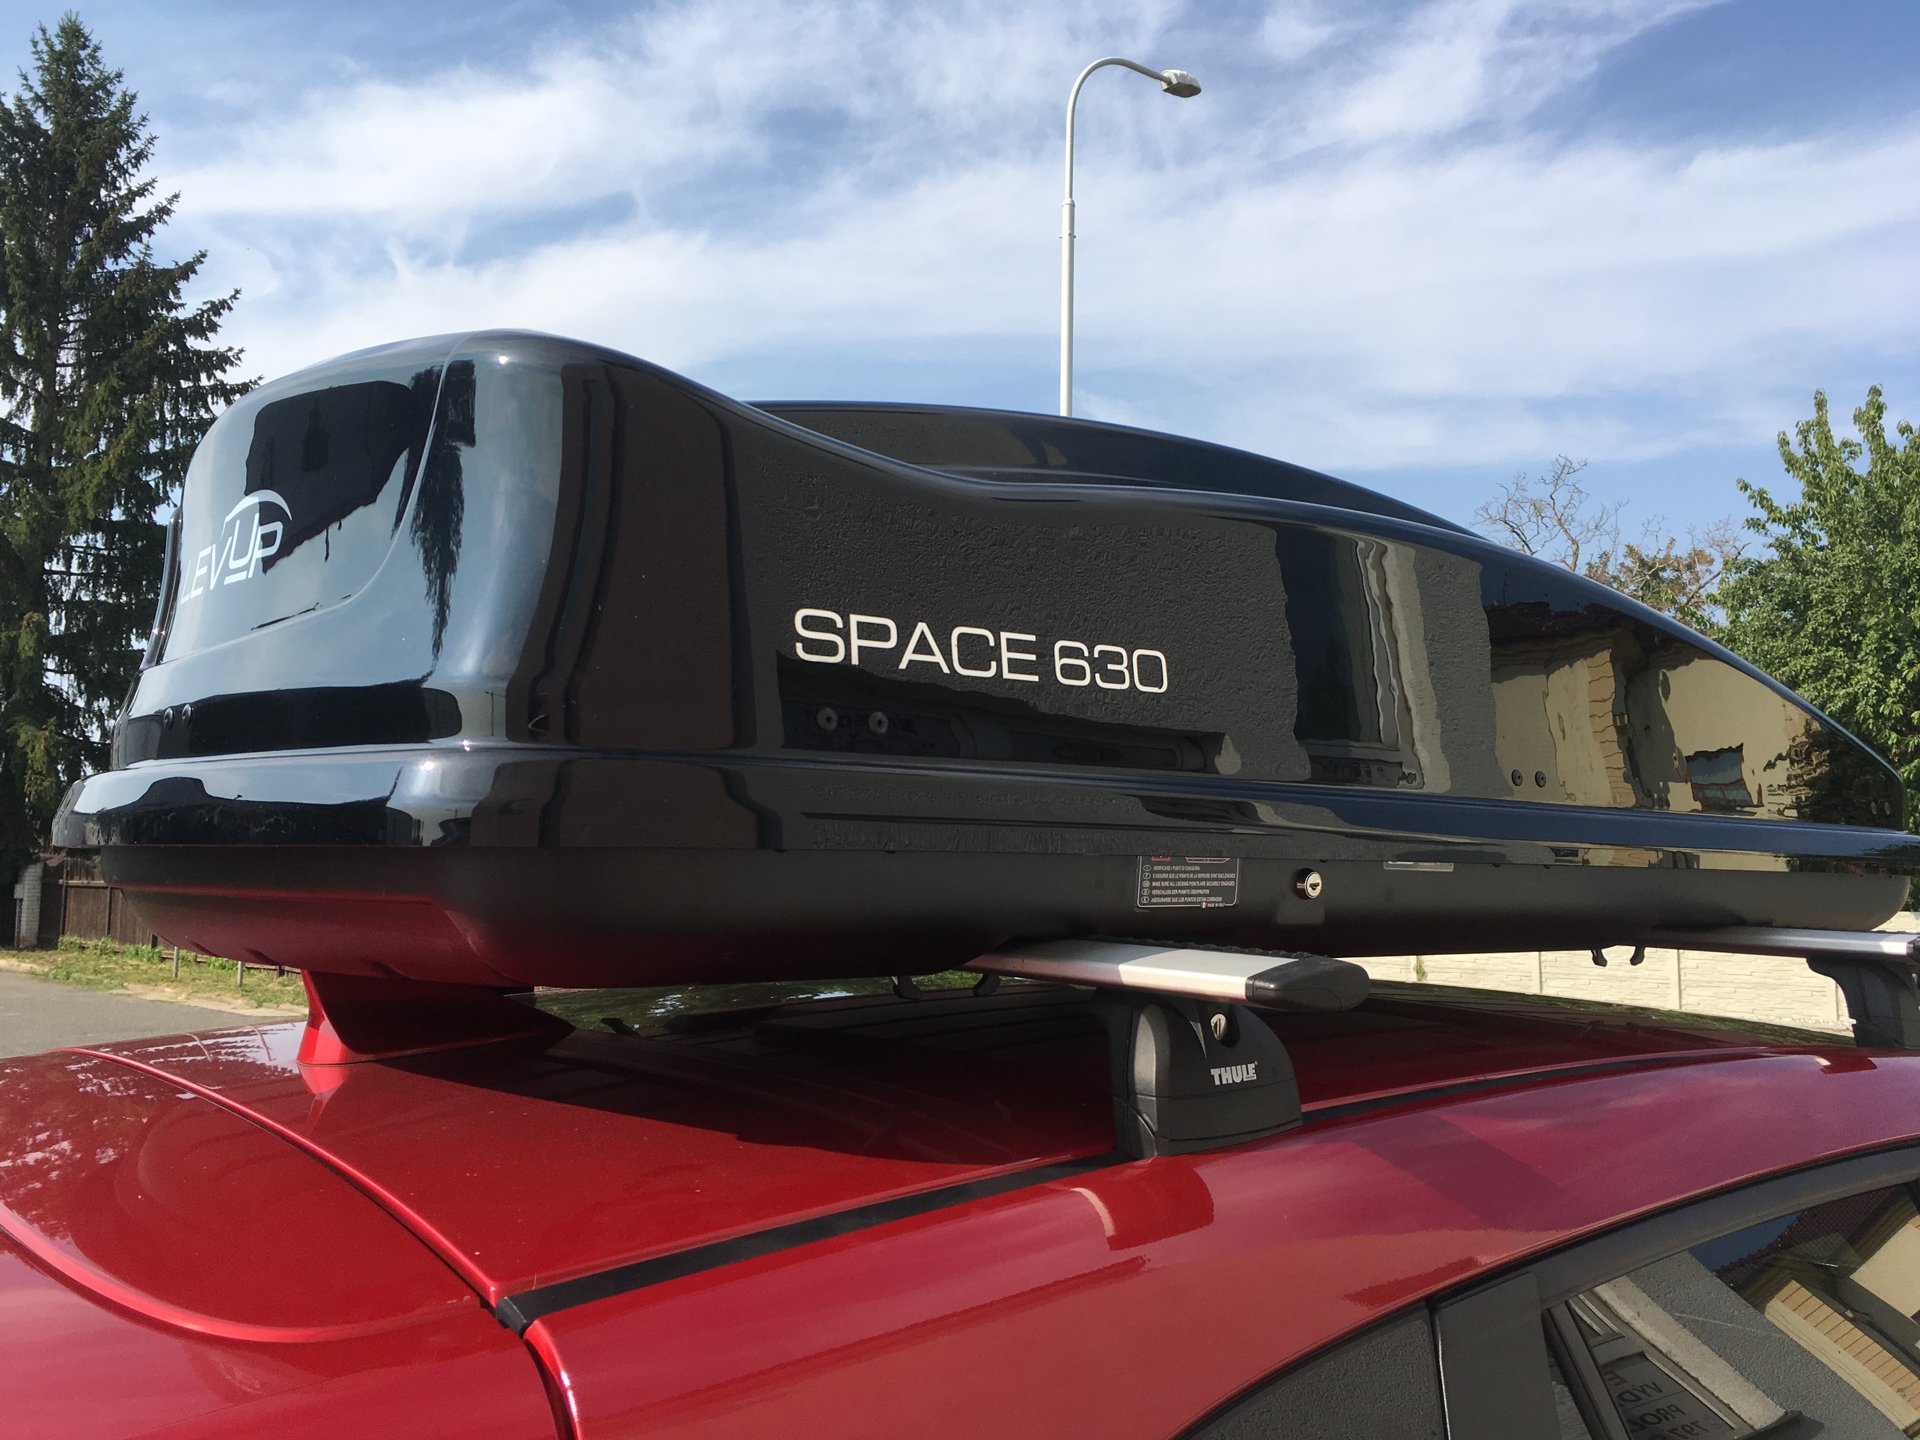 Montáž střešního boxu LevUp Space 630 na vozidlo zakázníka v dílně Filson Store Uhříněves